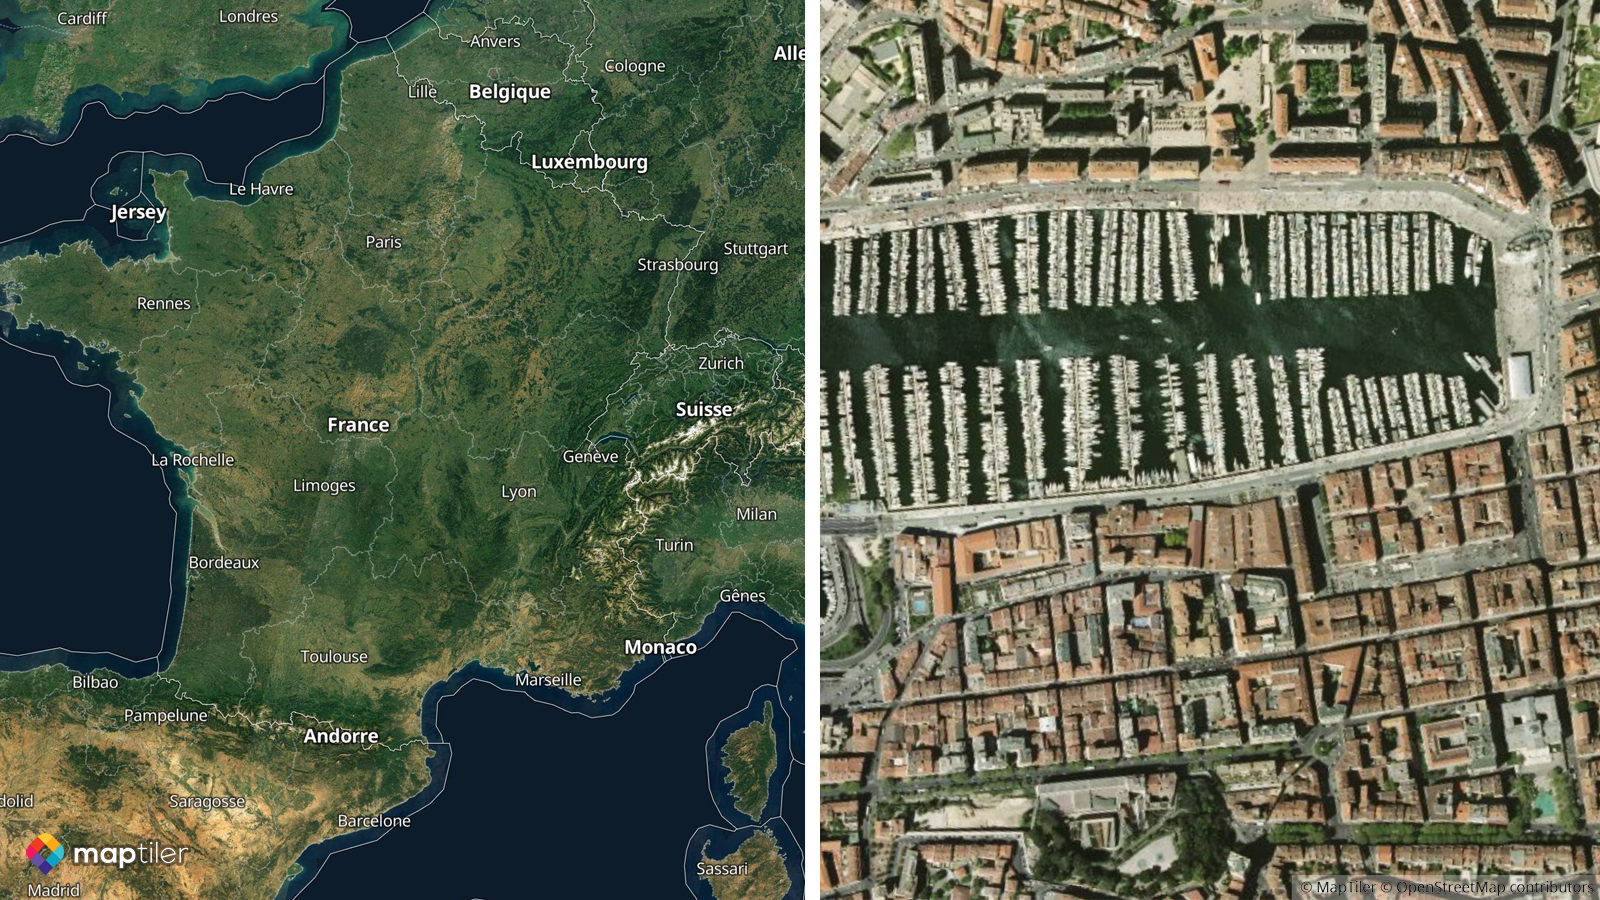 Mappa satellitare ad alta risoluzione della Francia